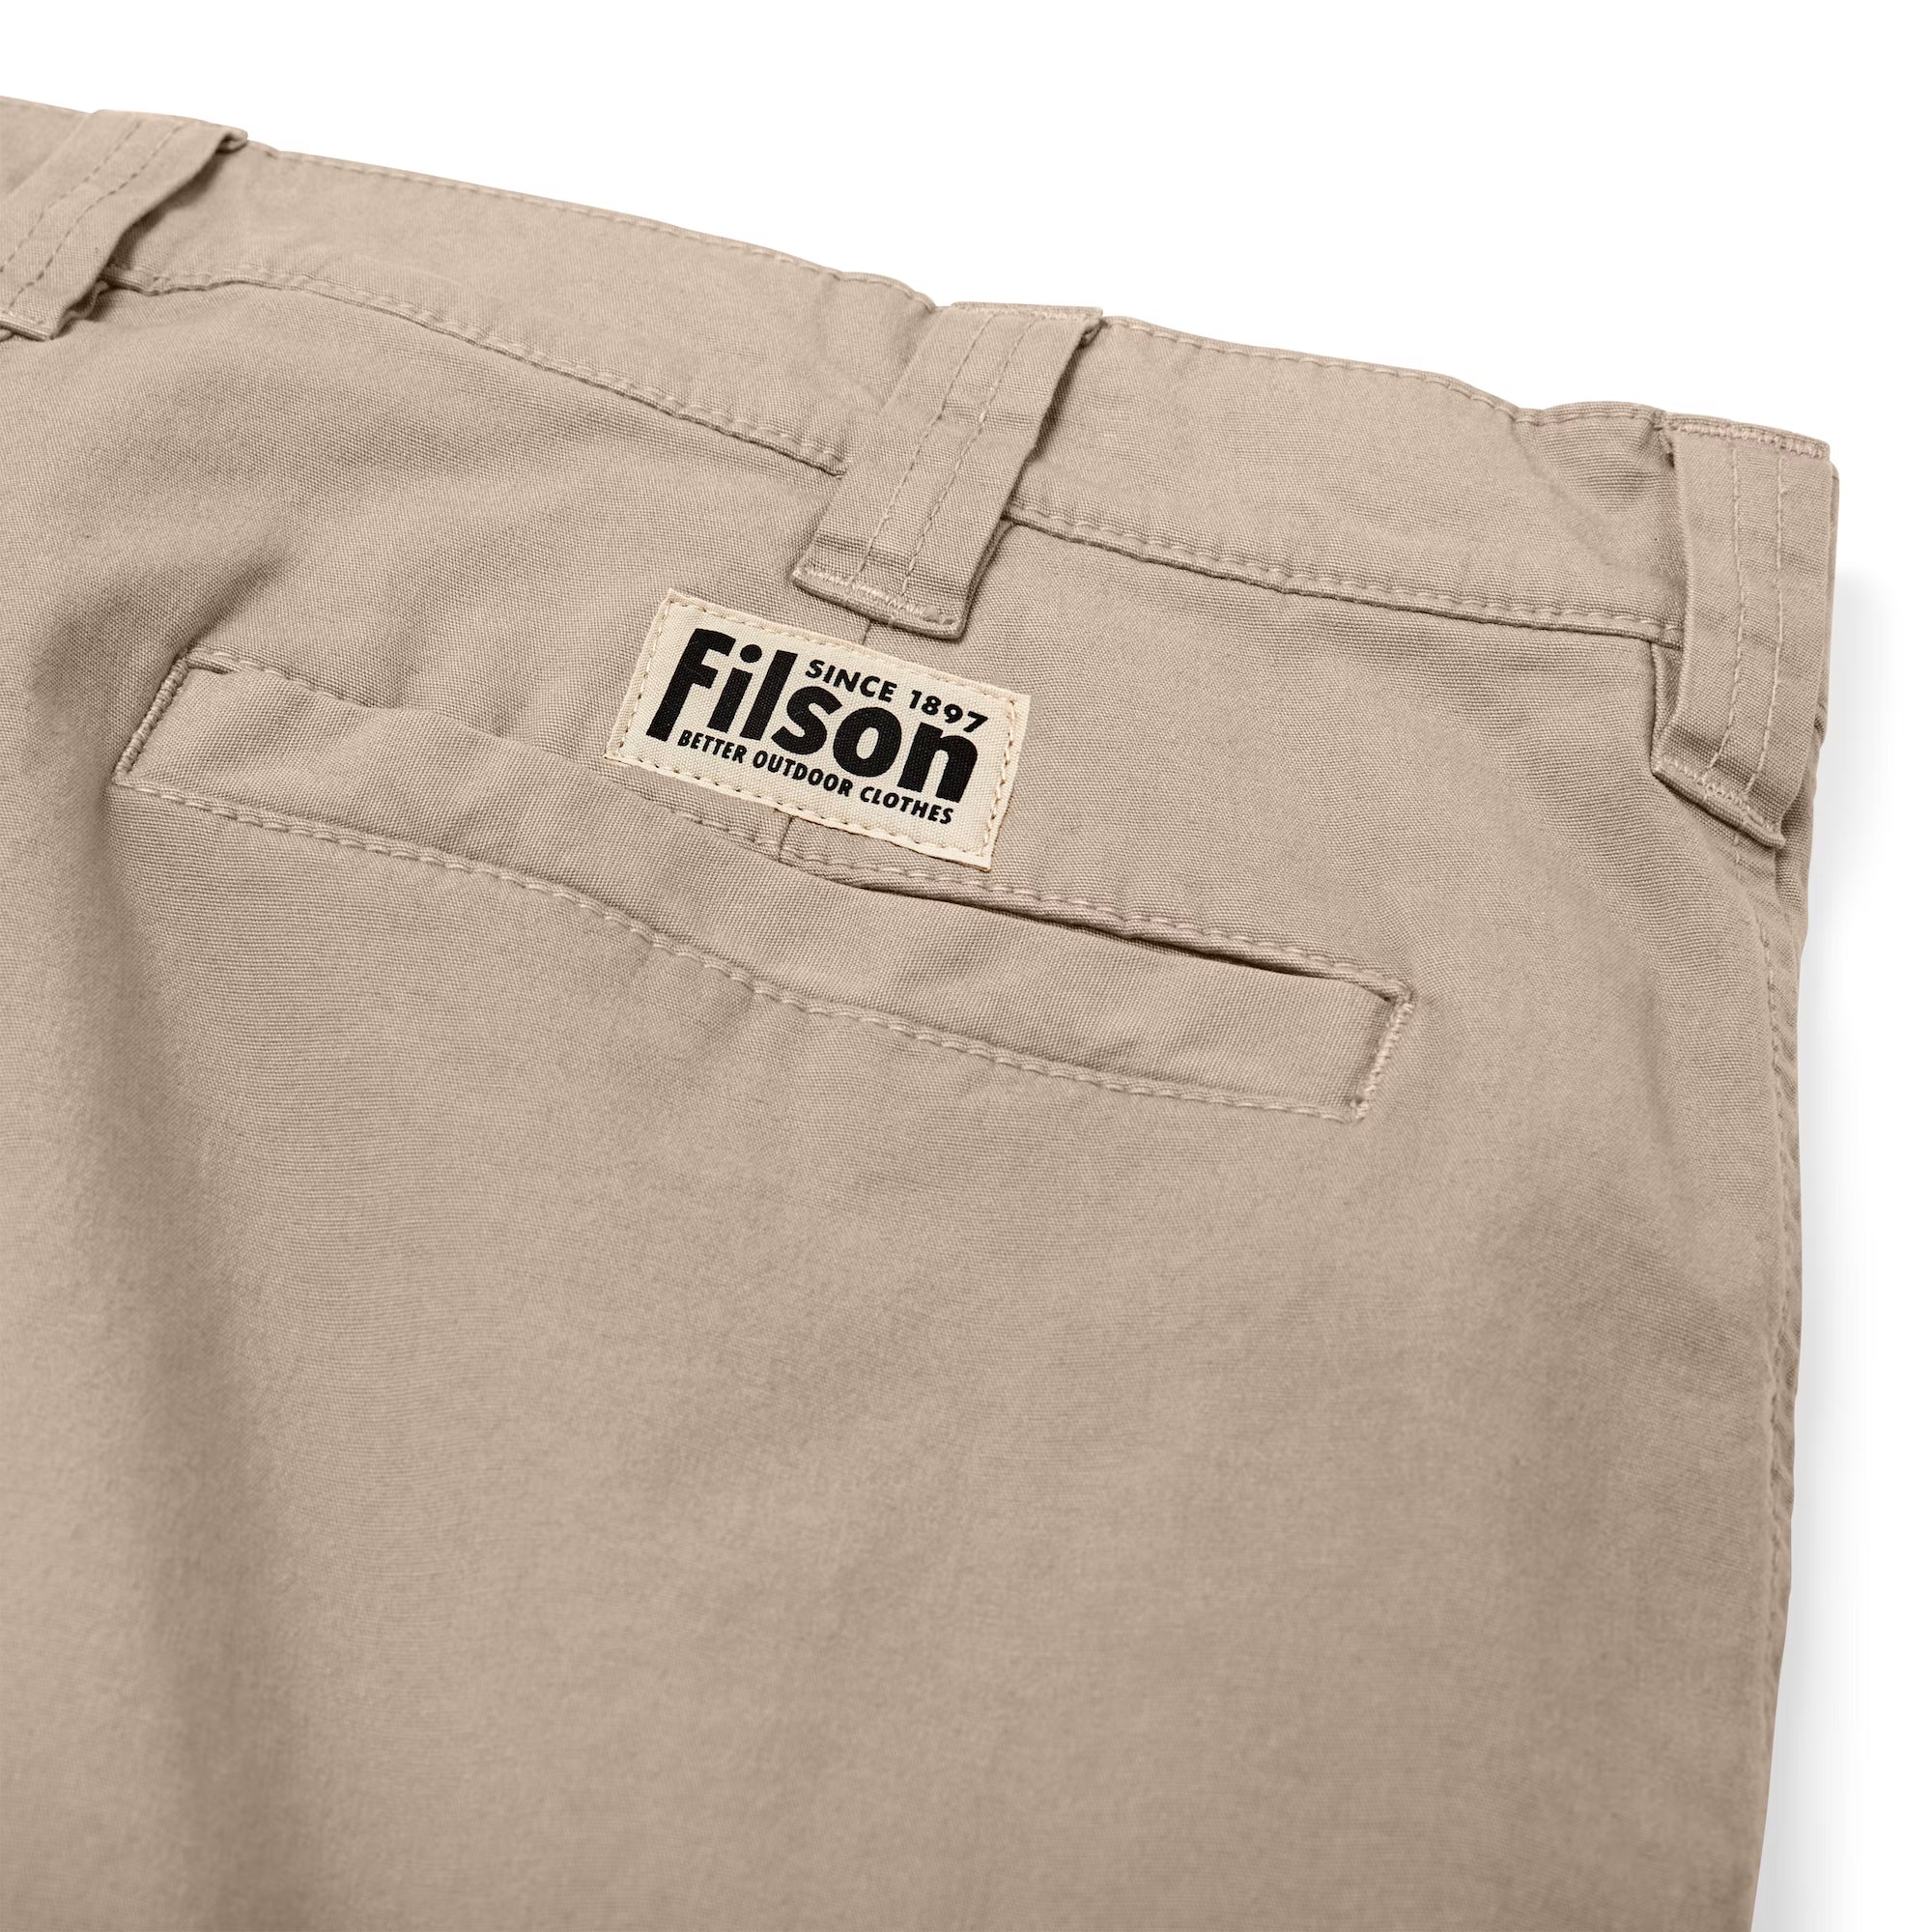 Filson Granite Mountain 9 Shorts - Mud Brown 38